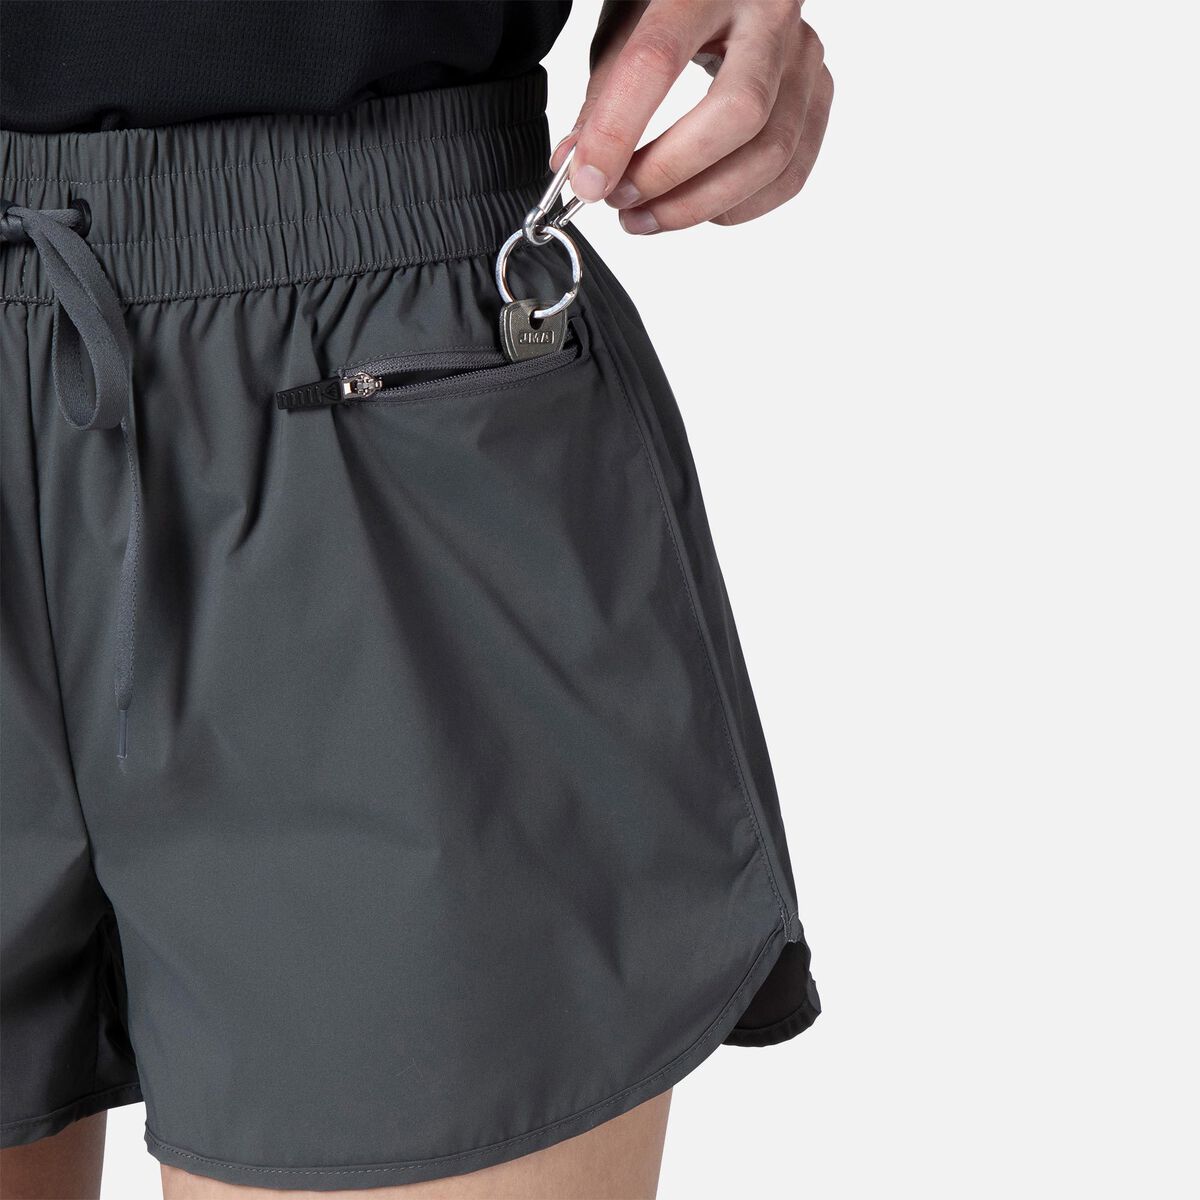 Rossignol Pantalones cortos básicos para mujer grey